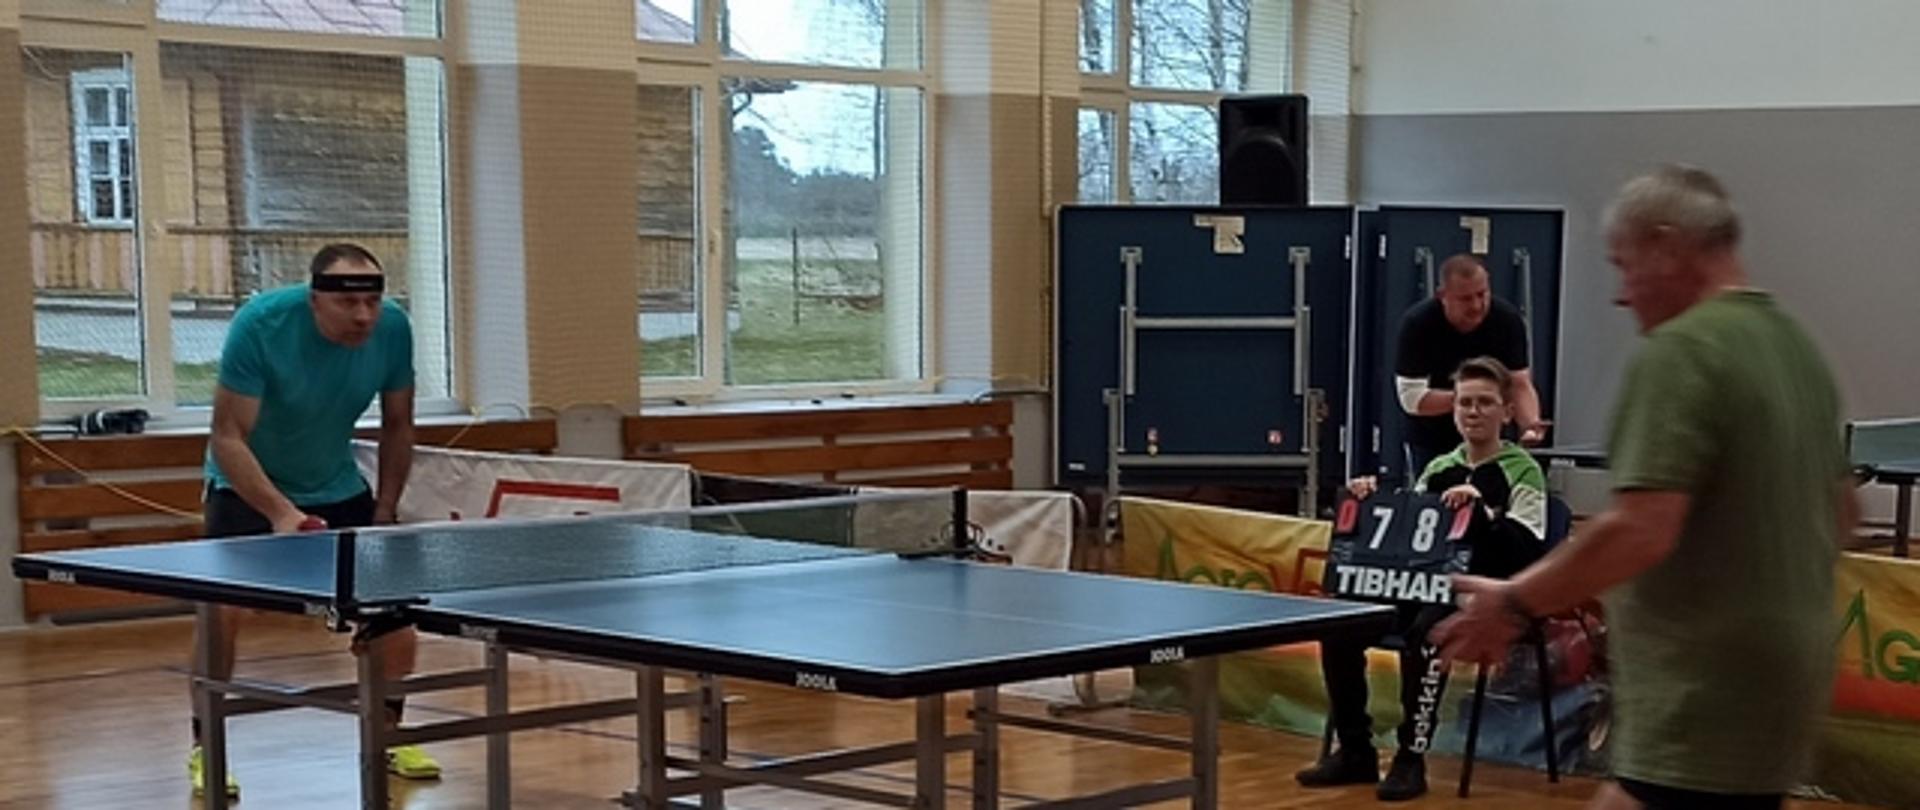 Dwóch uczestników przy stole tenisowym rozgrywa mecz